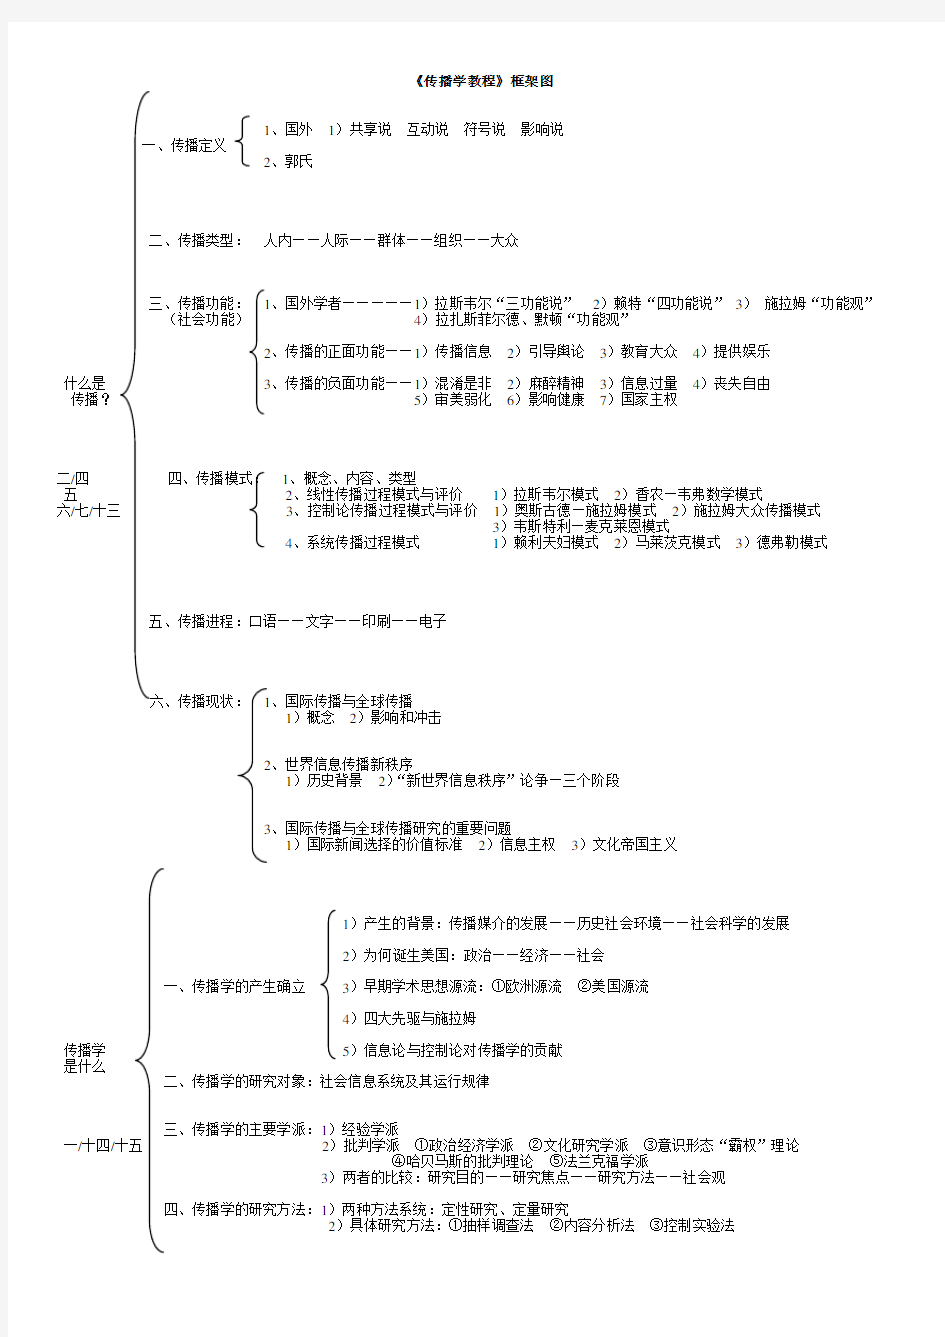 郭庆光版-传播学教程框架图(整理版)